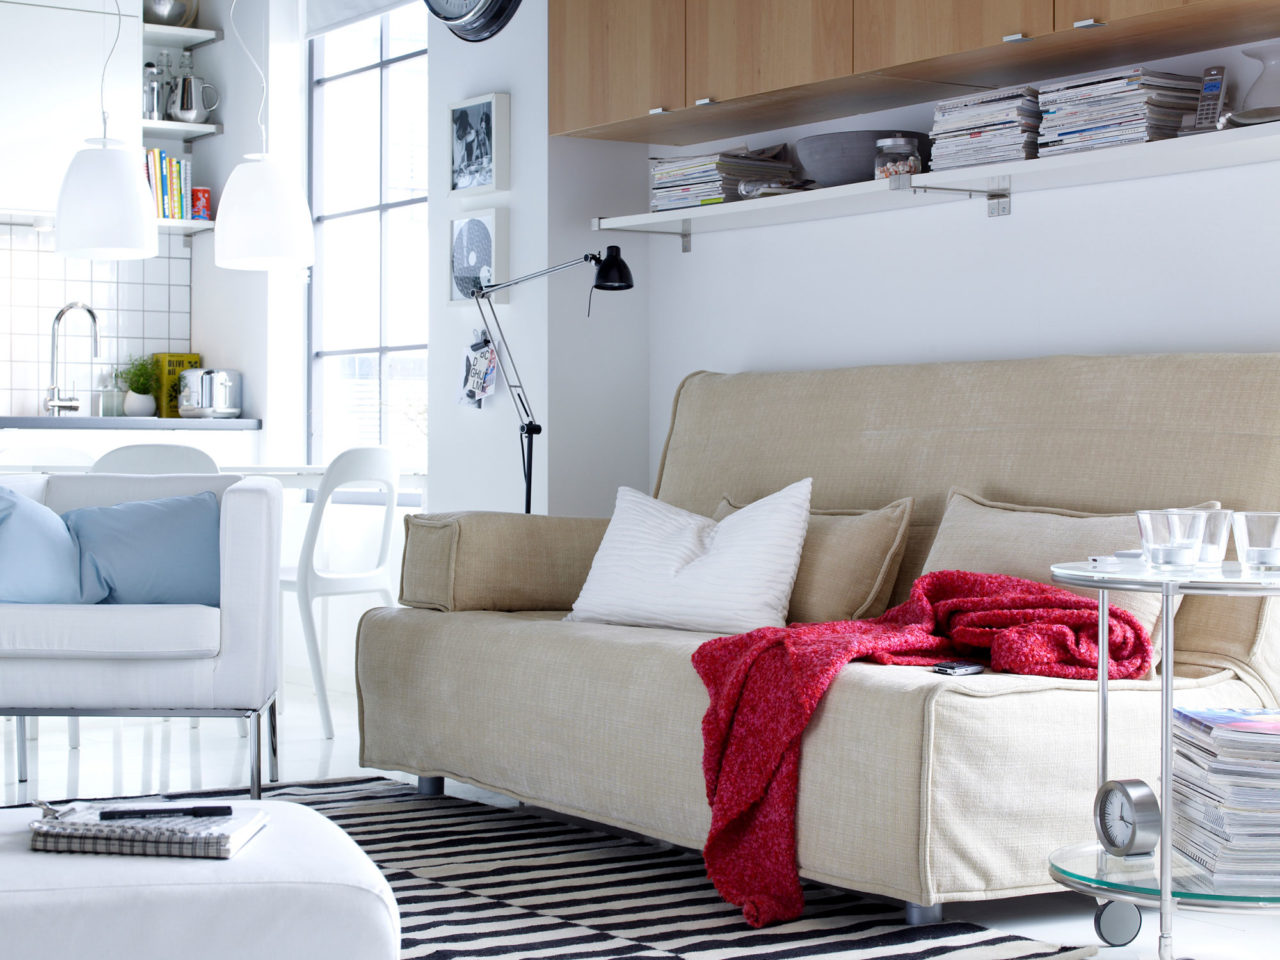 Canapé et fauteuil clairs sur un tapis à rayures noires et blanches. Le salon est placé à côté d’une cuisine toute blanche.